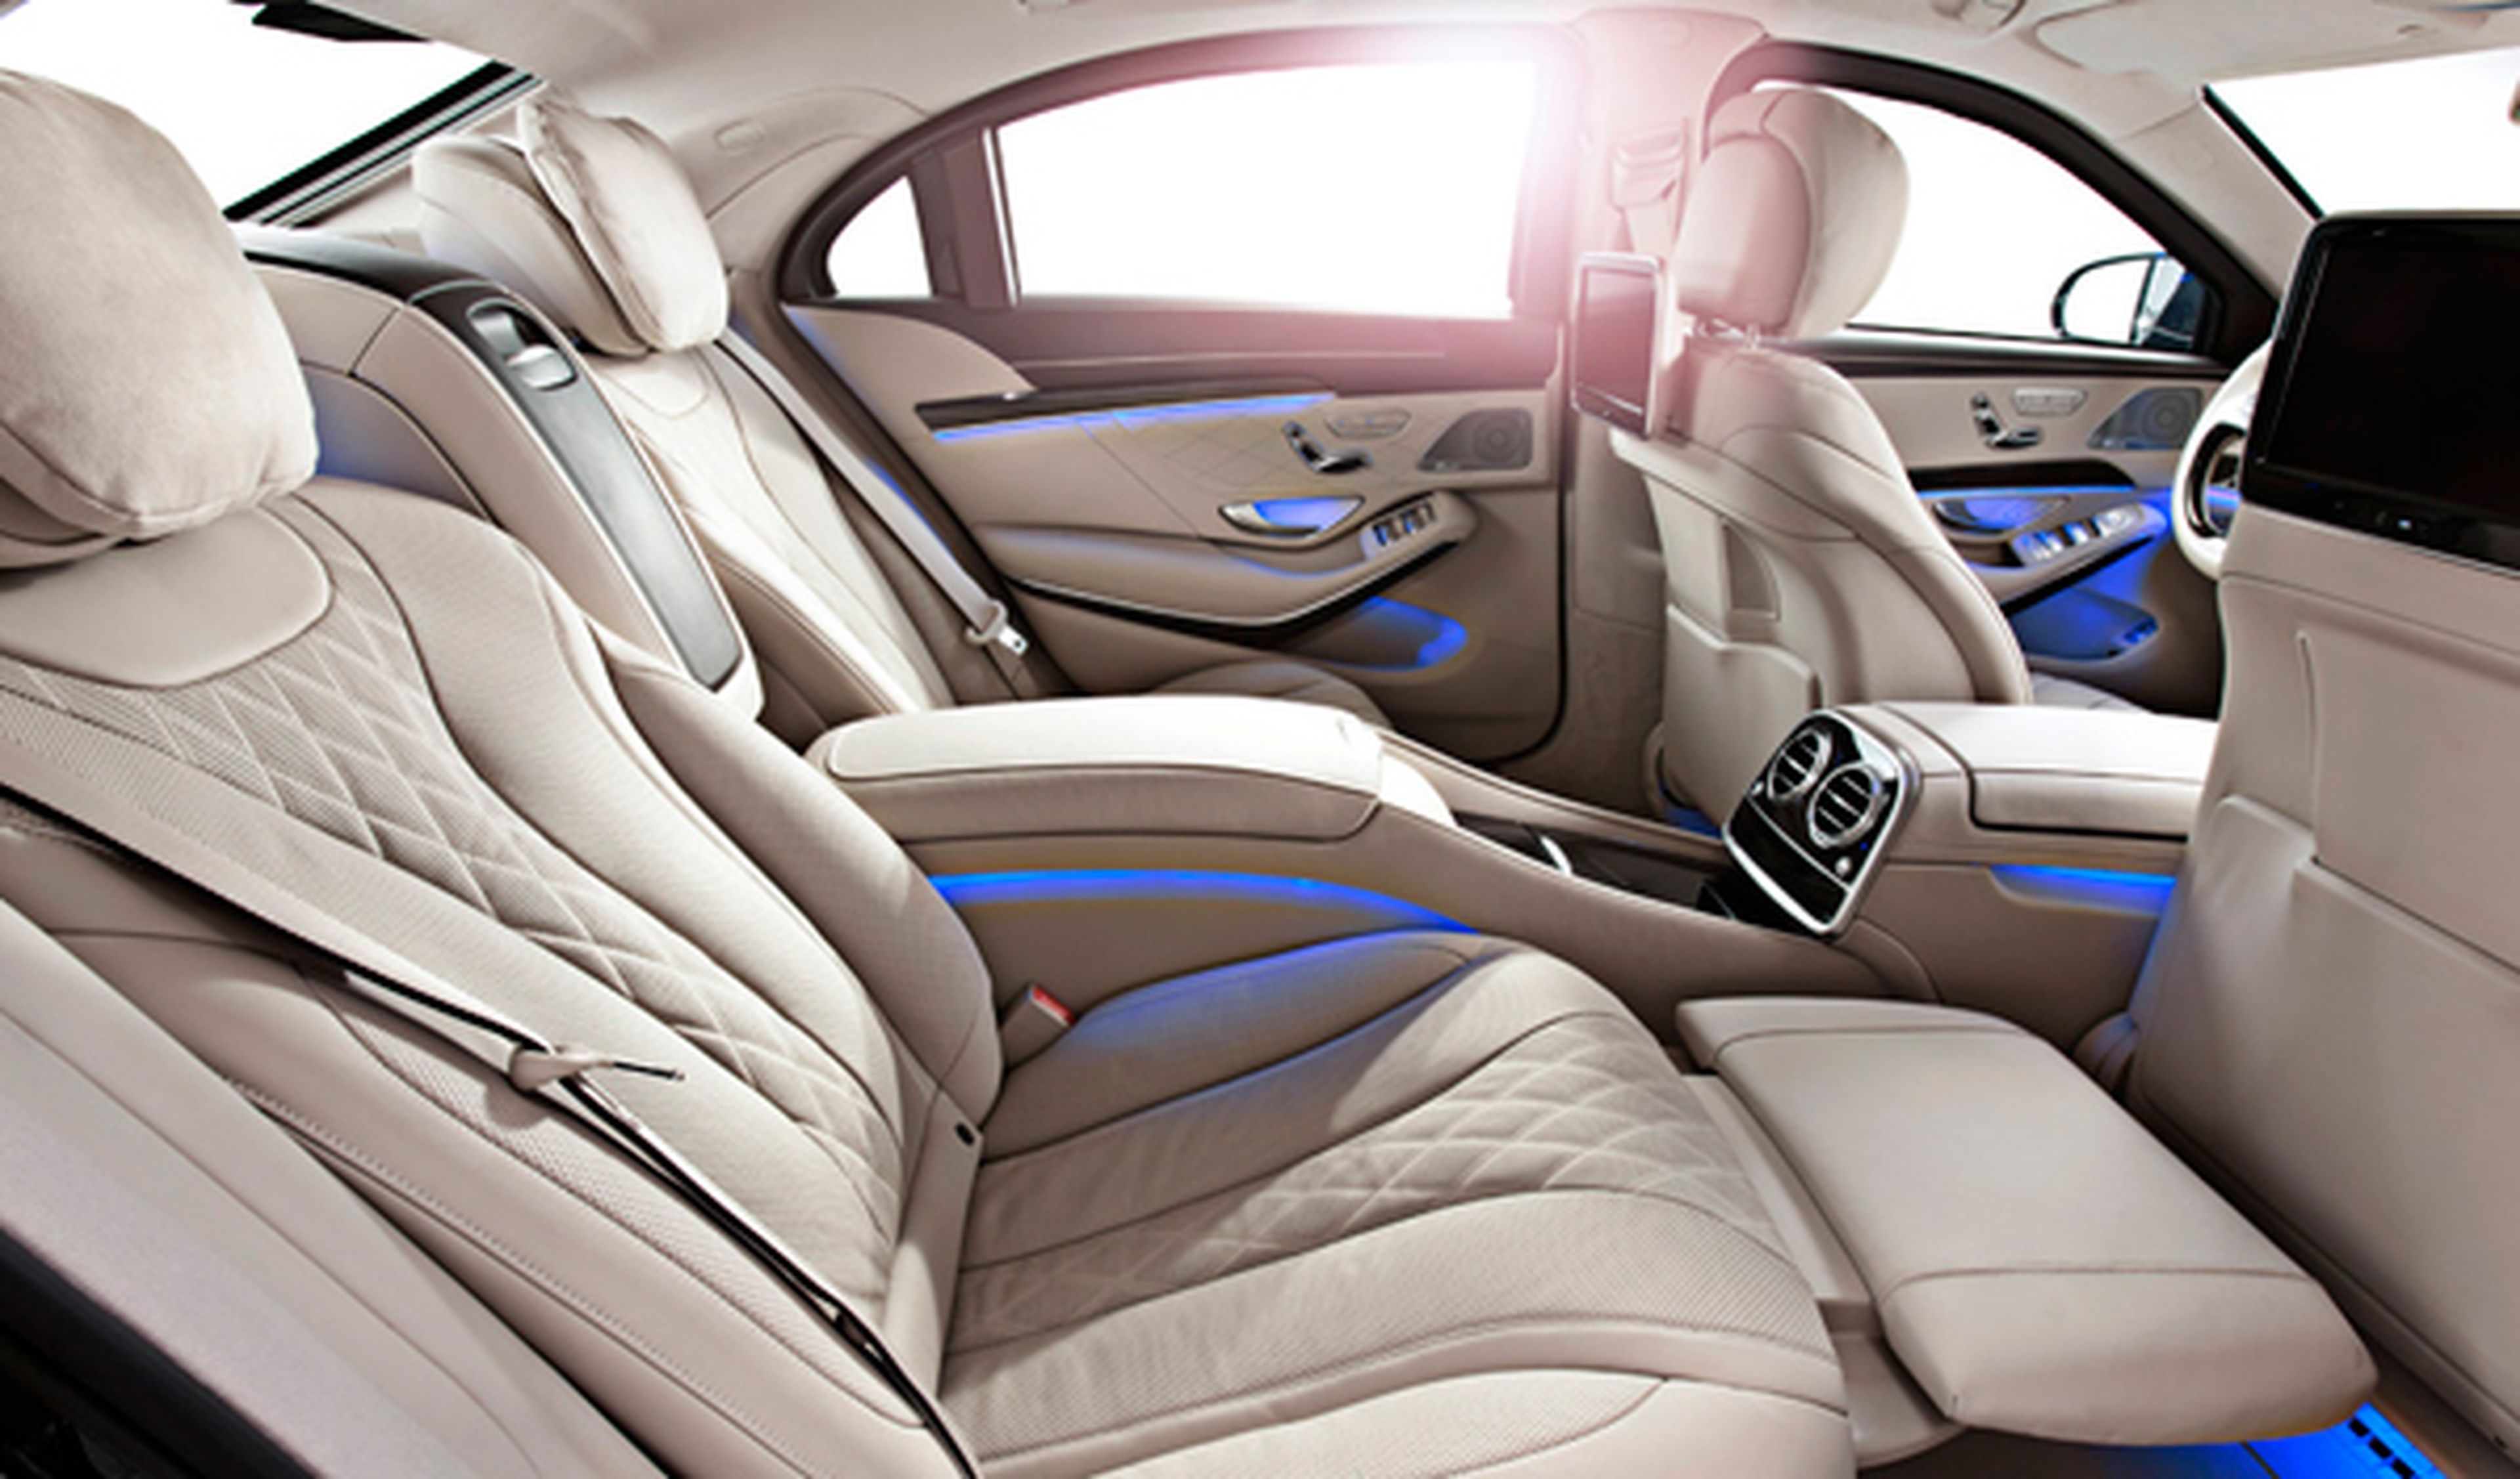 El espacio interior del Mercedes Clase S 600 Guard ofrece el máximo lujo y refinamiento, con la máxima protección